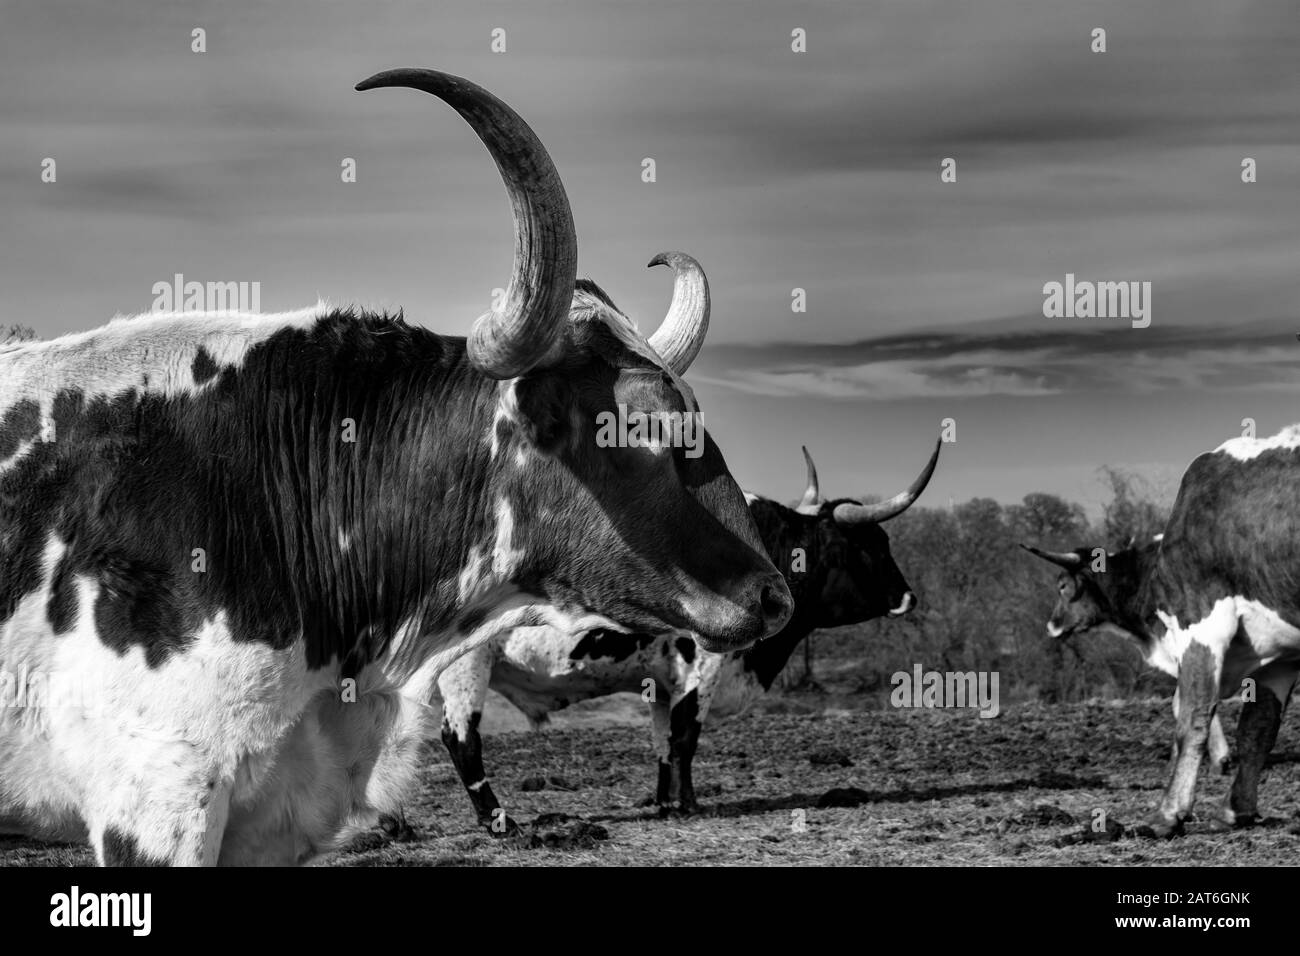 Ein Nahprofil des Kopfes und lange, gebogene, scharfe Hörner eines großen Longhorn-Stiers, der in einer Ranch-Weide mit anderen Rindern in seiner Herde steht. Stockfoto